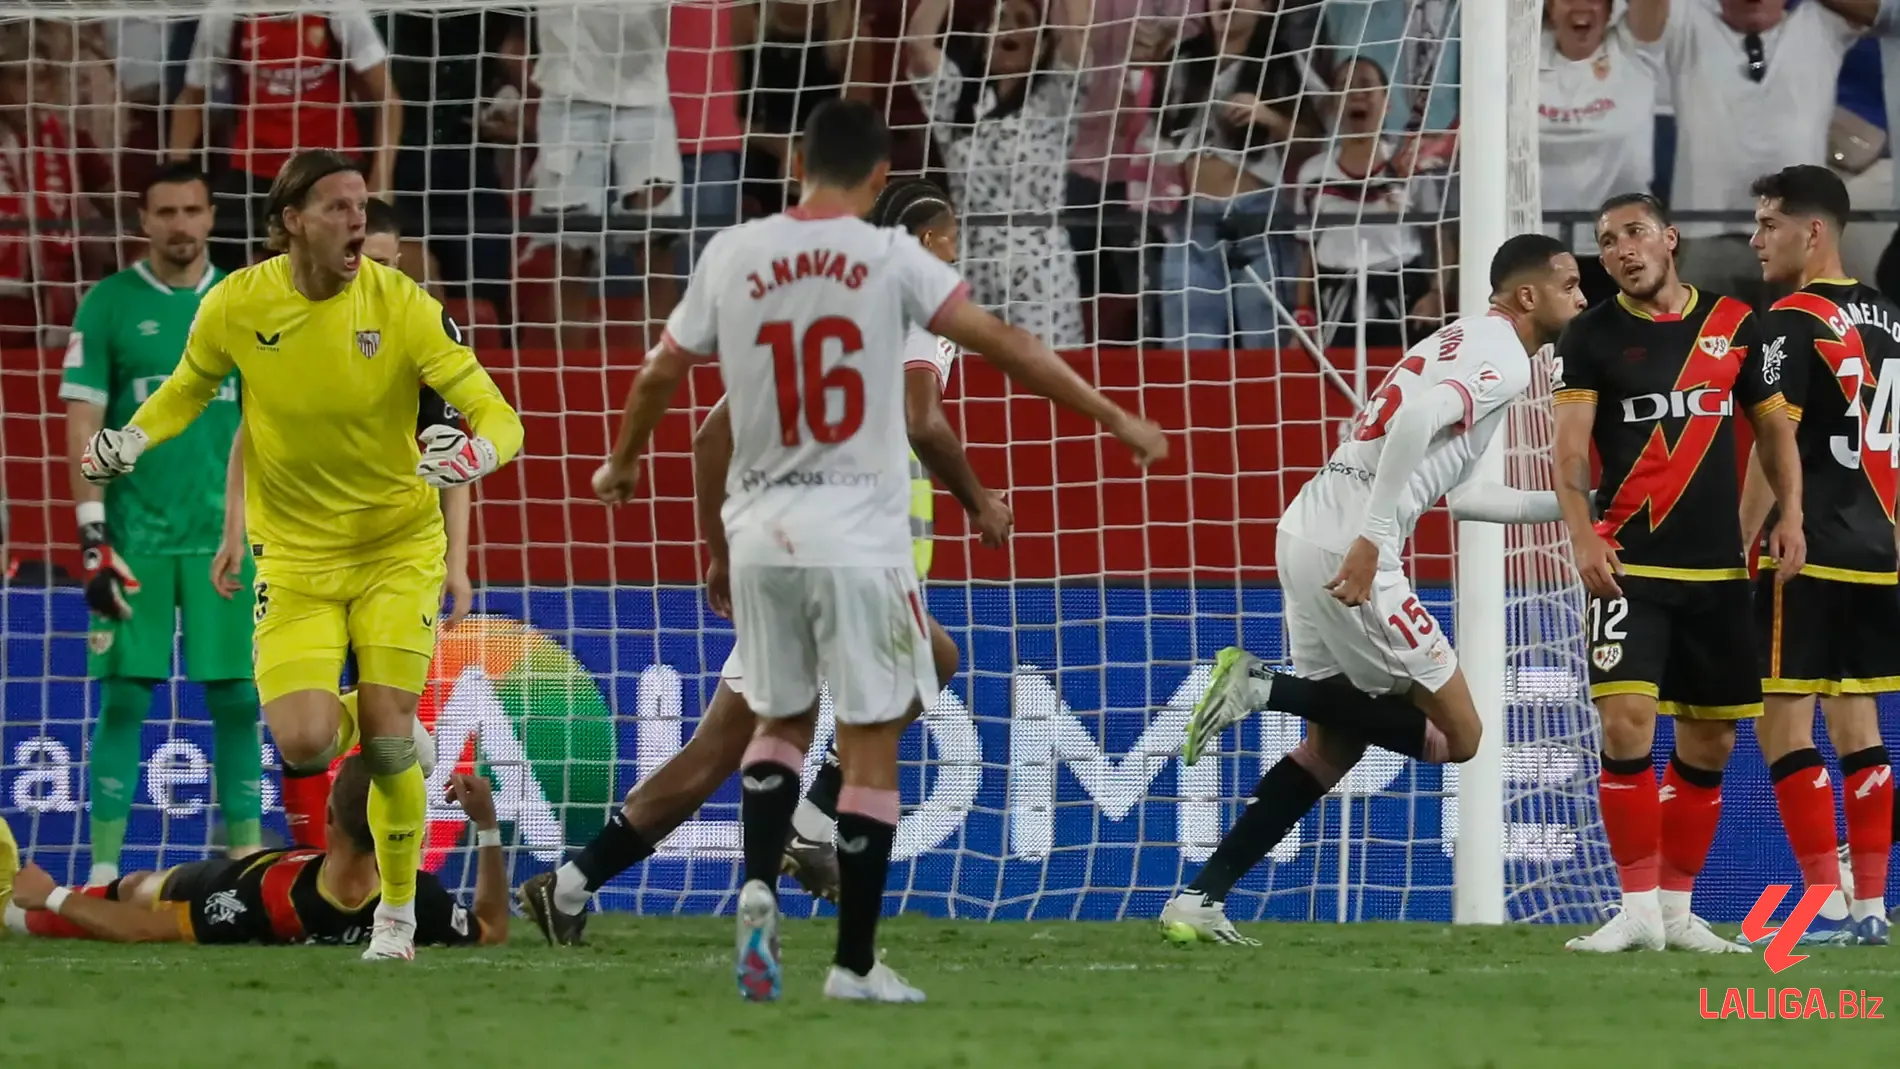 Tổng hợp diễn biến chính Sevilla gặp Vallecano và kết quả Sevilla vs Vallecano